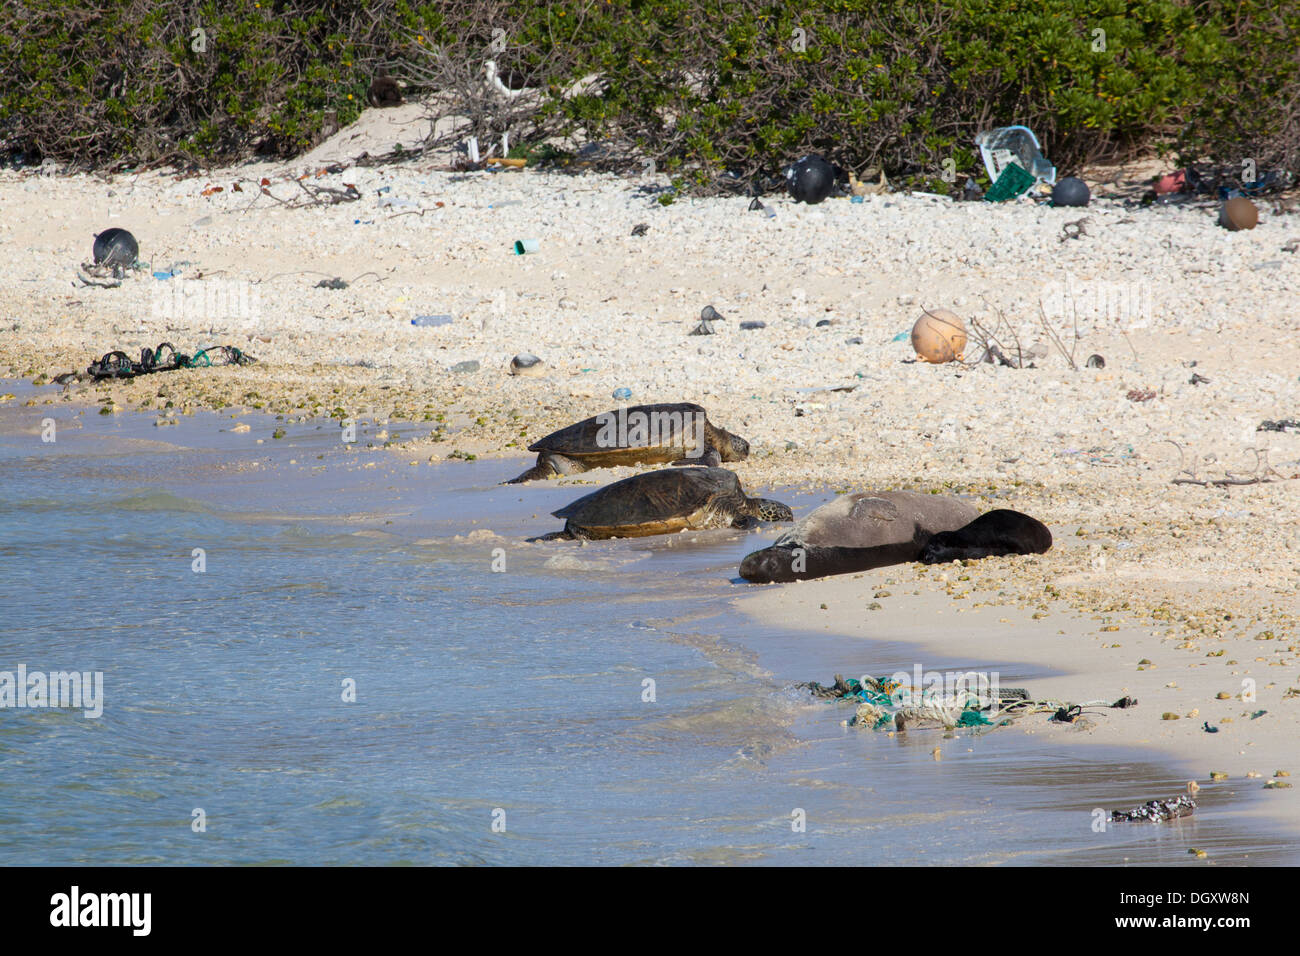 Le foche monache hawaiane (Neomonachus schauinslandi) e le tartarughe marine (Chelonia mydas) si crogiolano su una spiaggia dell'isola del Pacifico settentrionale con detriti marini Foto Stock